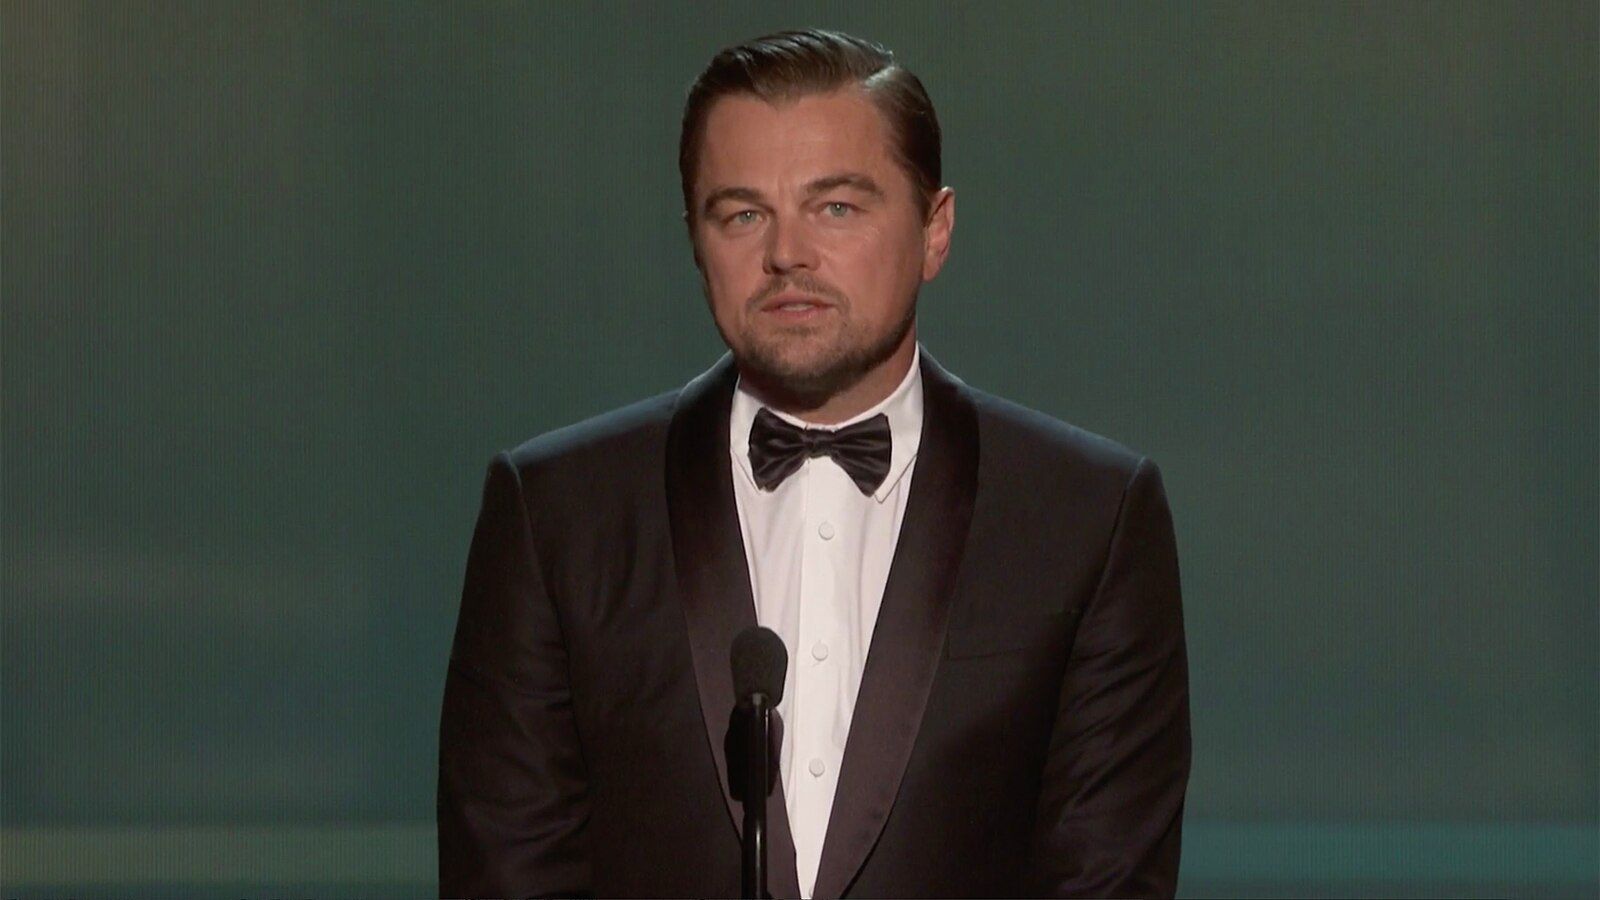 SAG Awards: Leonardo DiCaprio presents Life Achievement Award